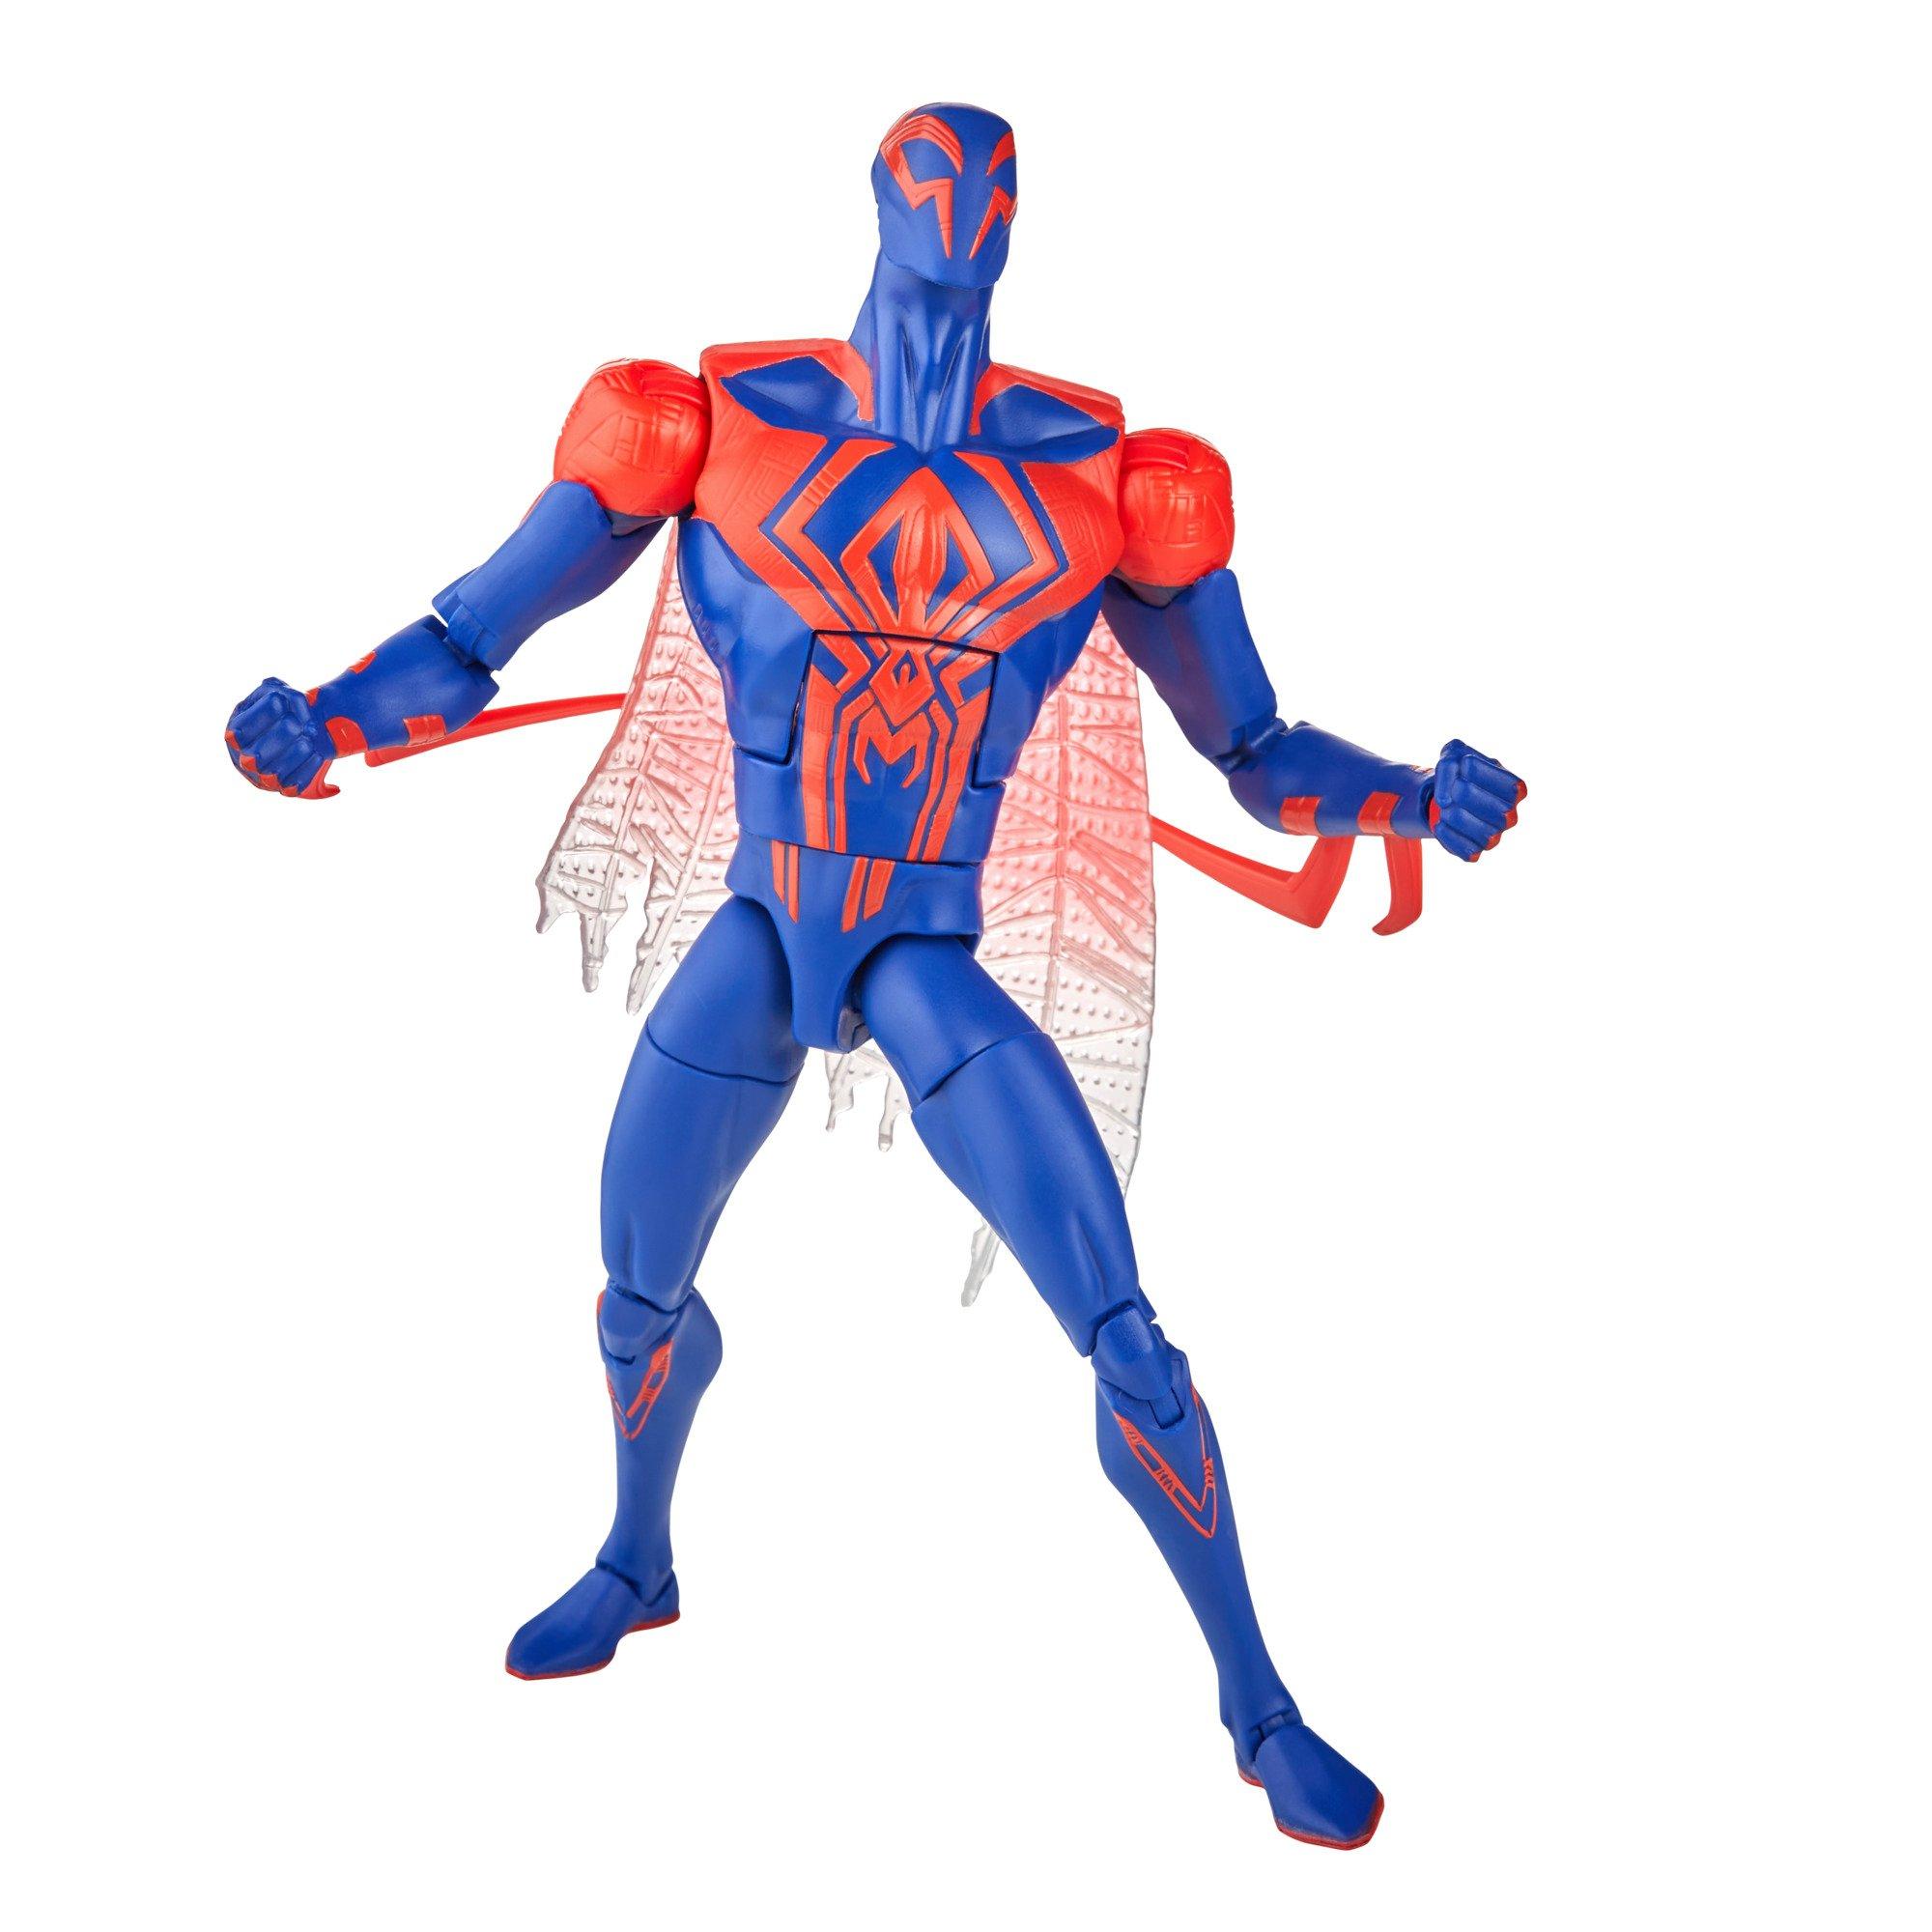 SPIDER-MAN: ACROSS THE SPIDER-VERSE Clip - Stop Spider-Man 